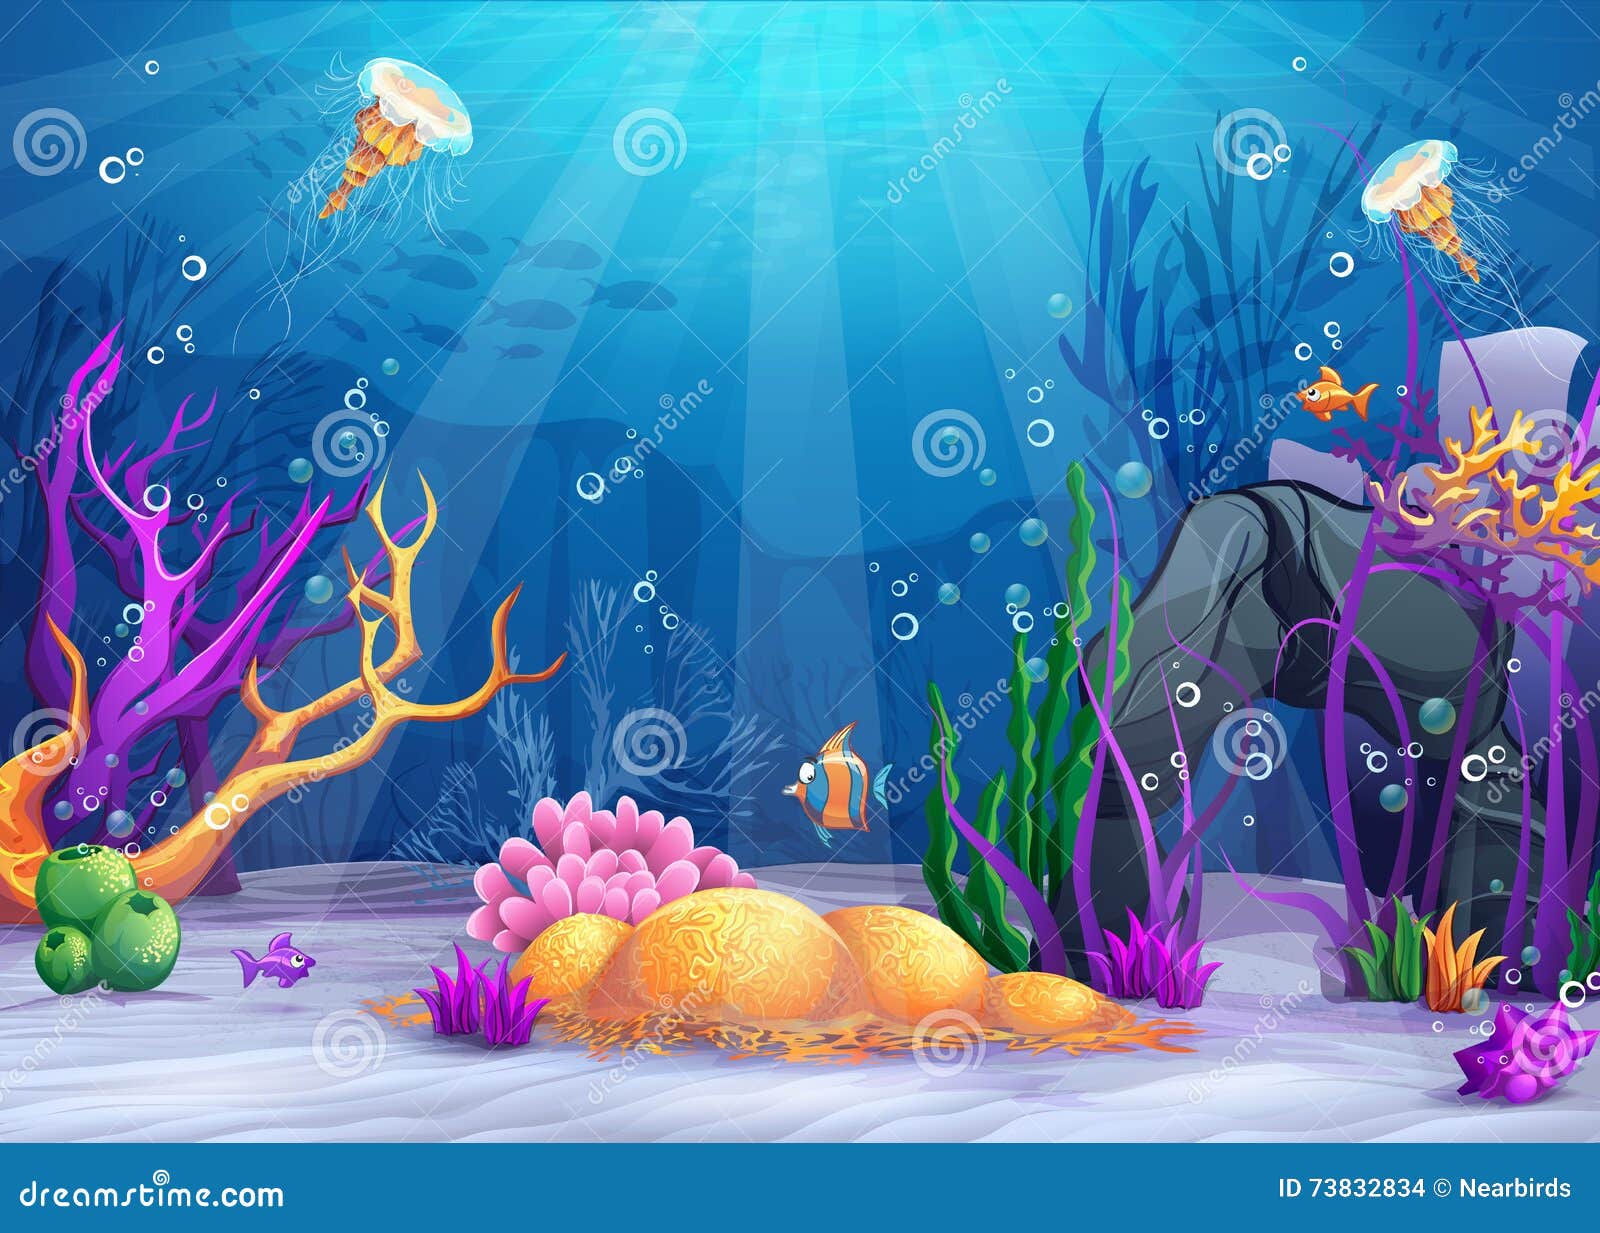 underwater world cartoon 